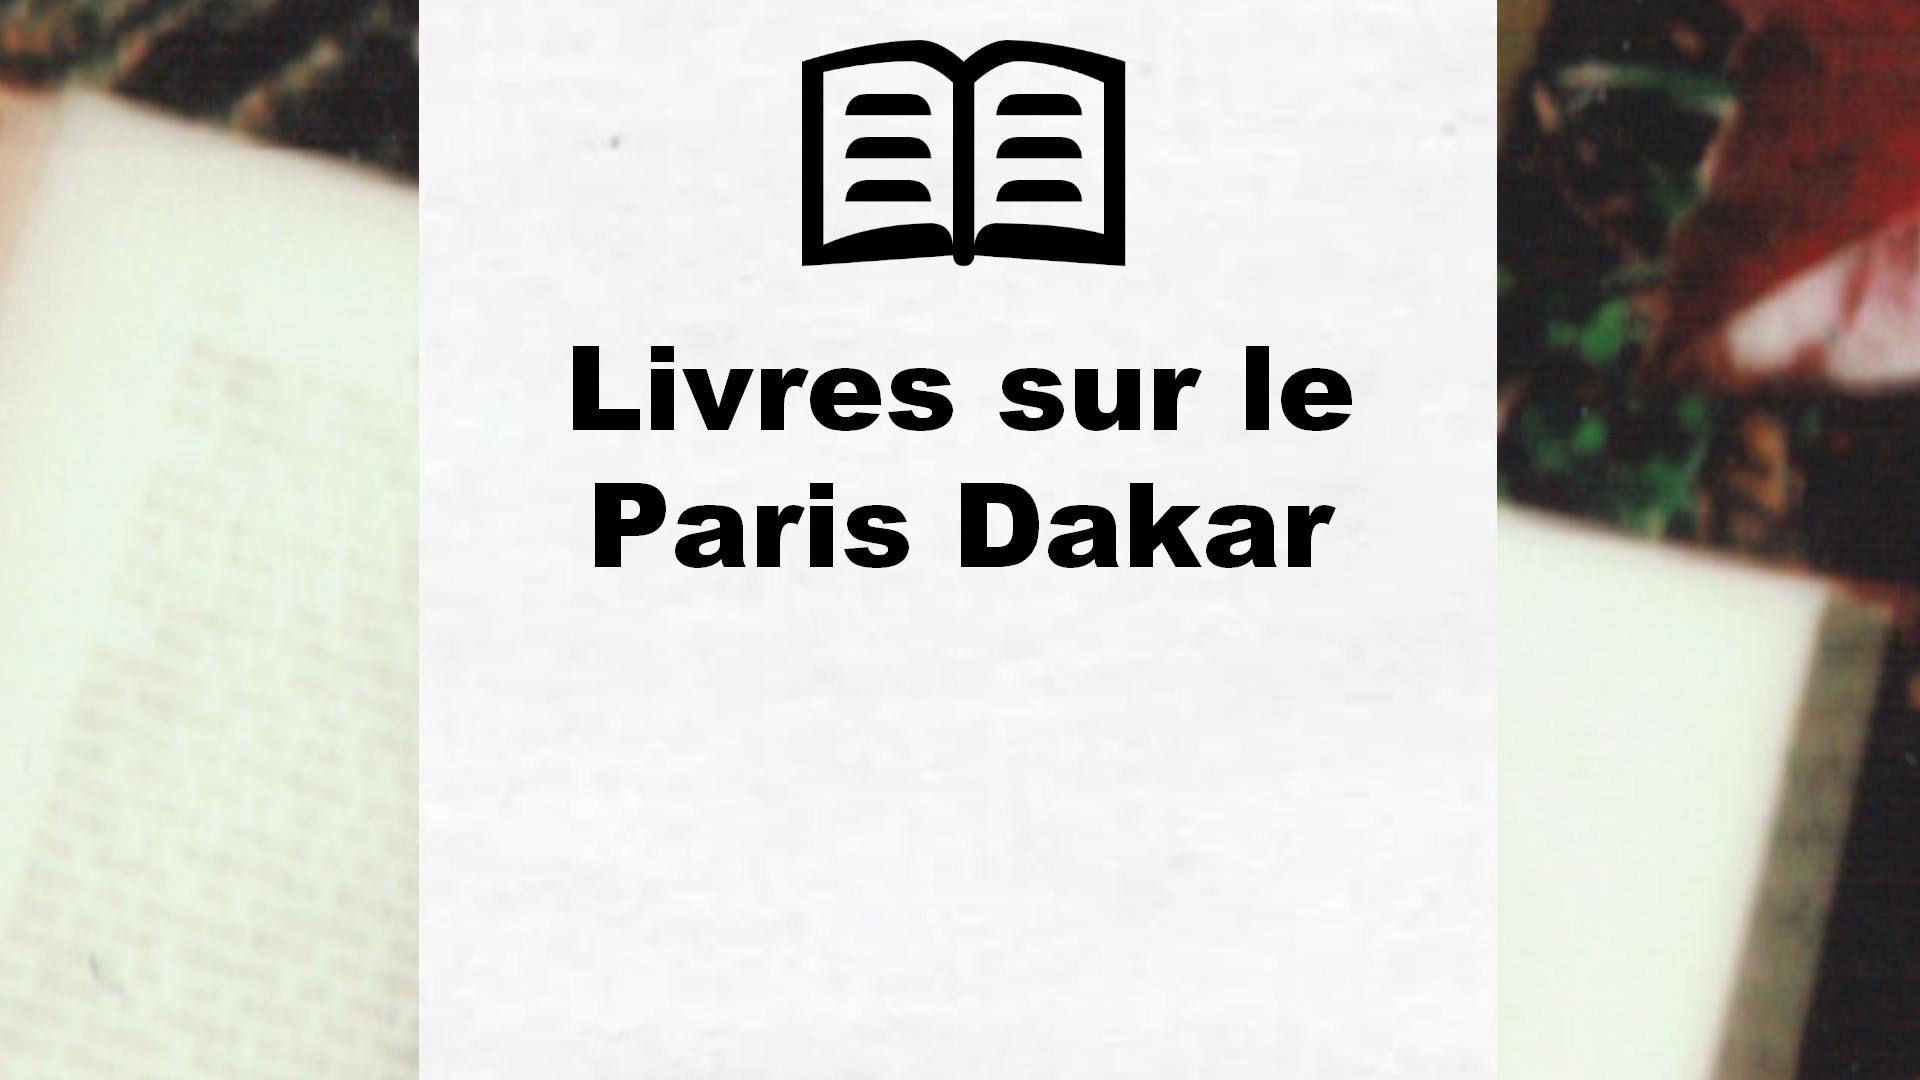 Livres sur le Paris Dakar